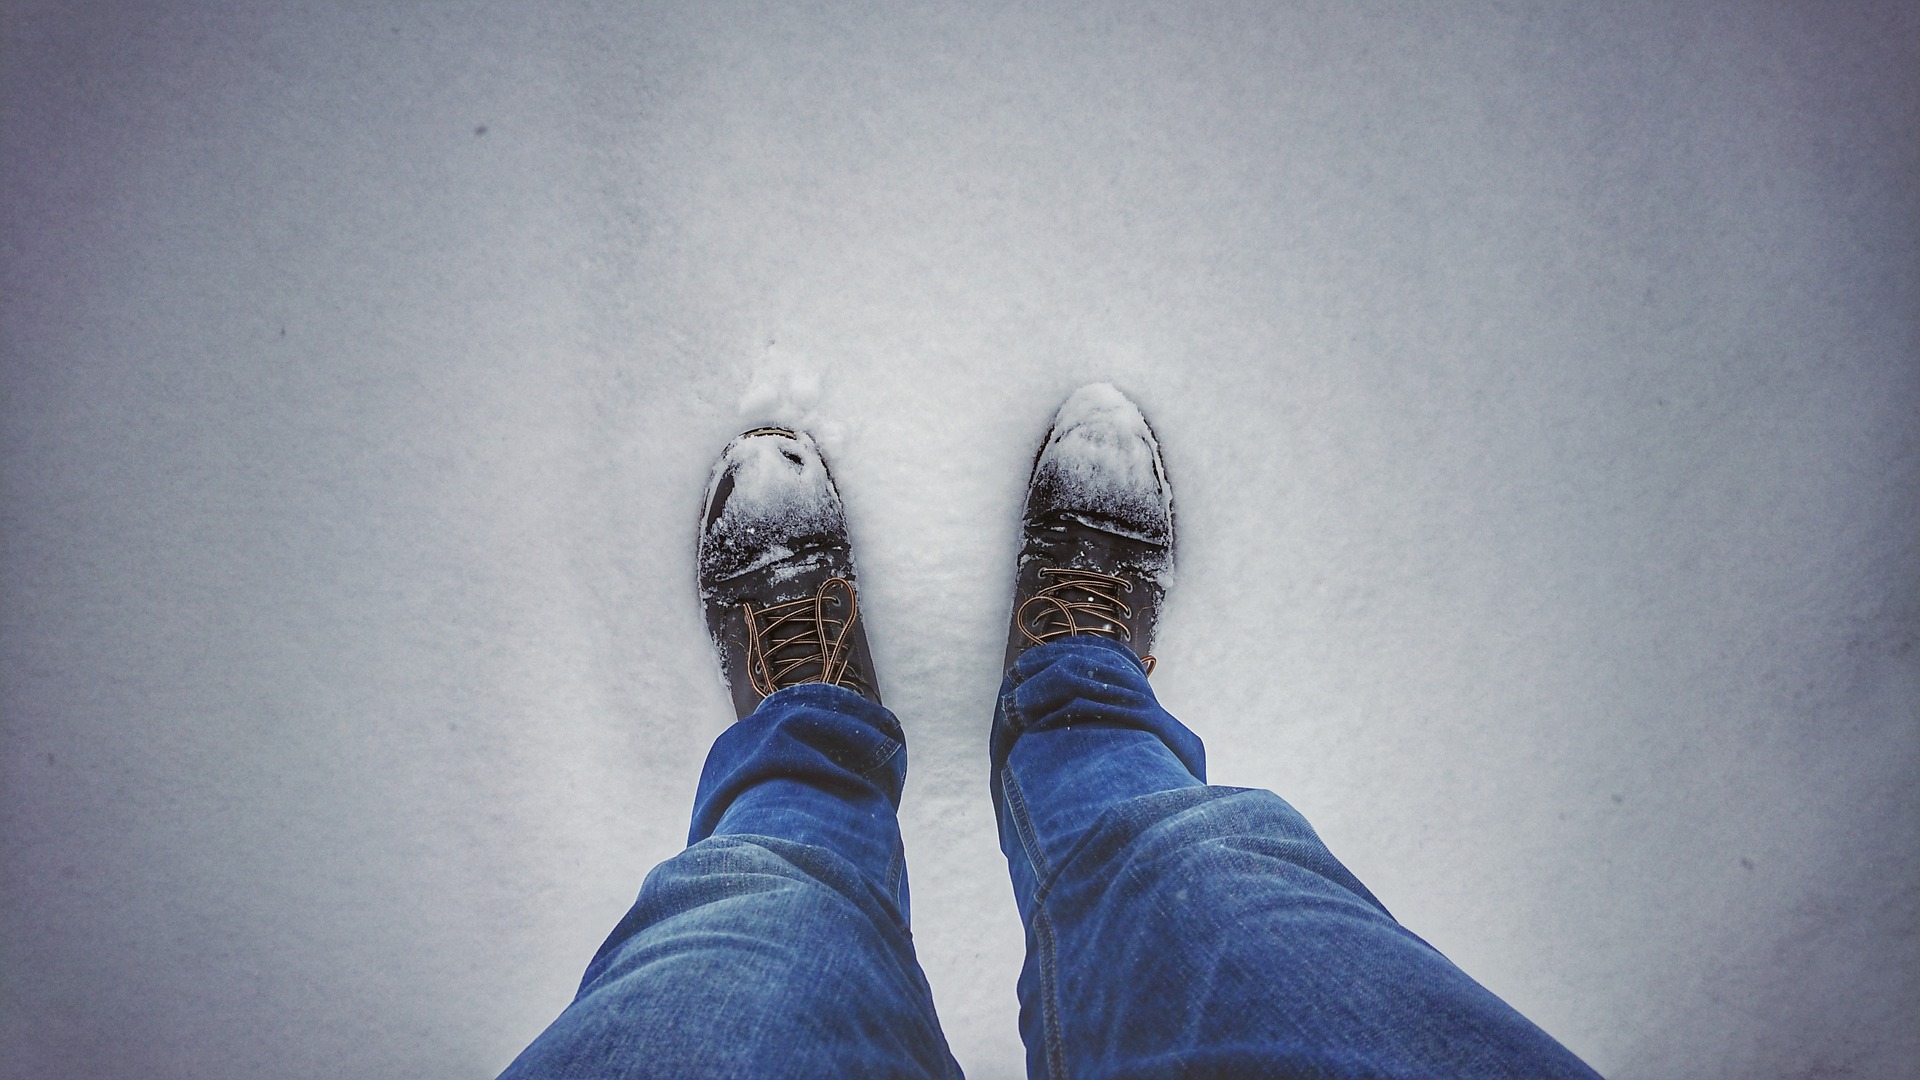 Ного жив. Ноги в снегу. Ноги на снегу вид сверху. Снег под ногами. Заснеженные ботинки.